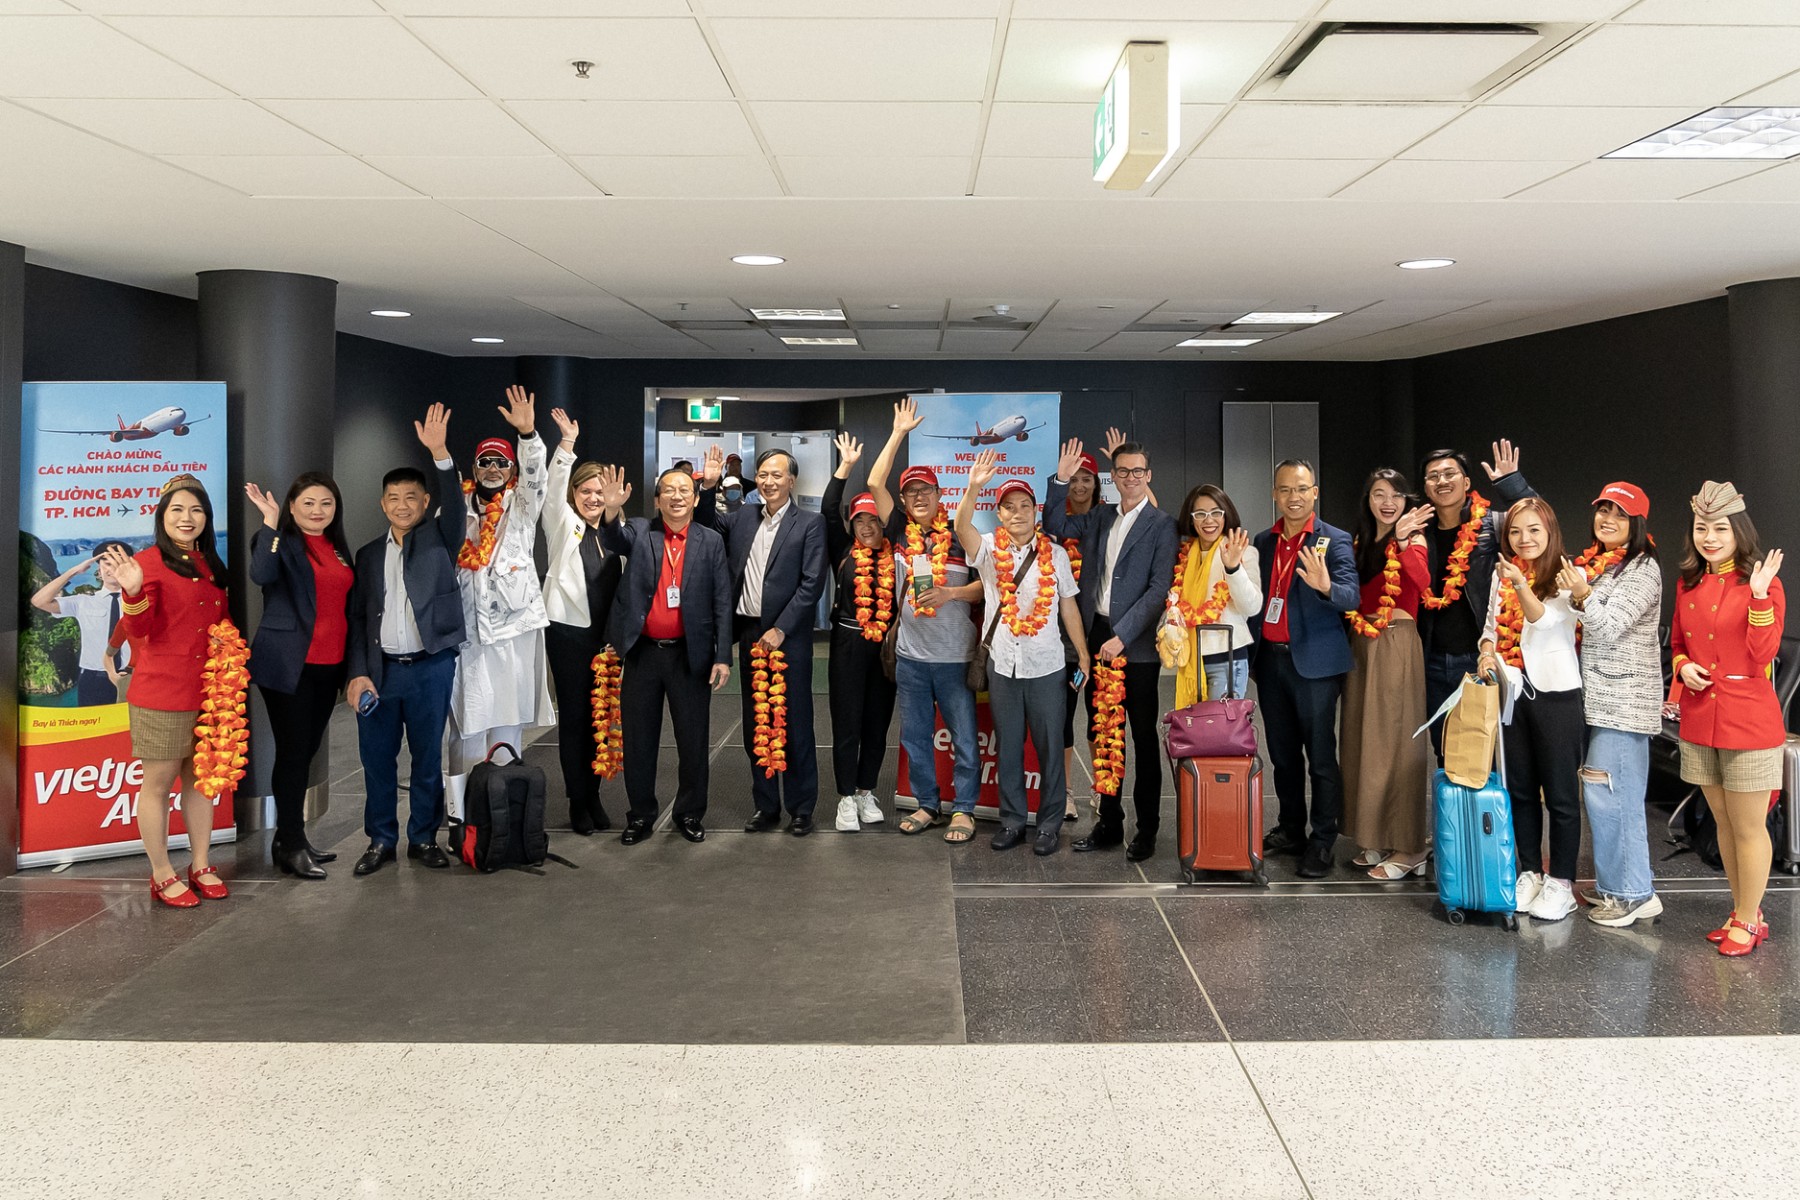 Kinh tế - Từ hôm nay, Vietjet chào đón khách hàng trên các đường bay kết nối Melbourne, Sydney với Việt Nam (Hình 8).